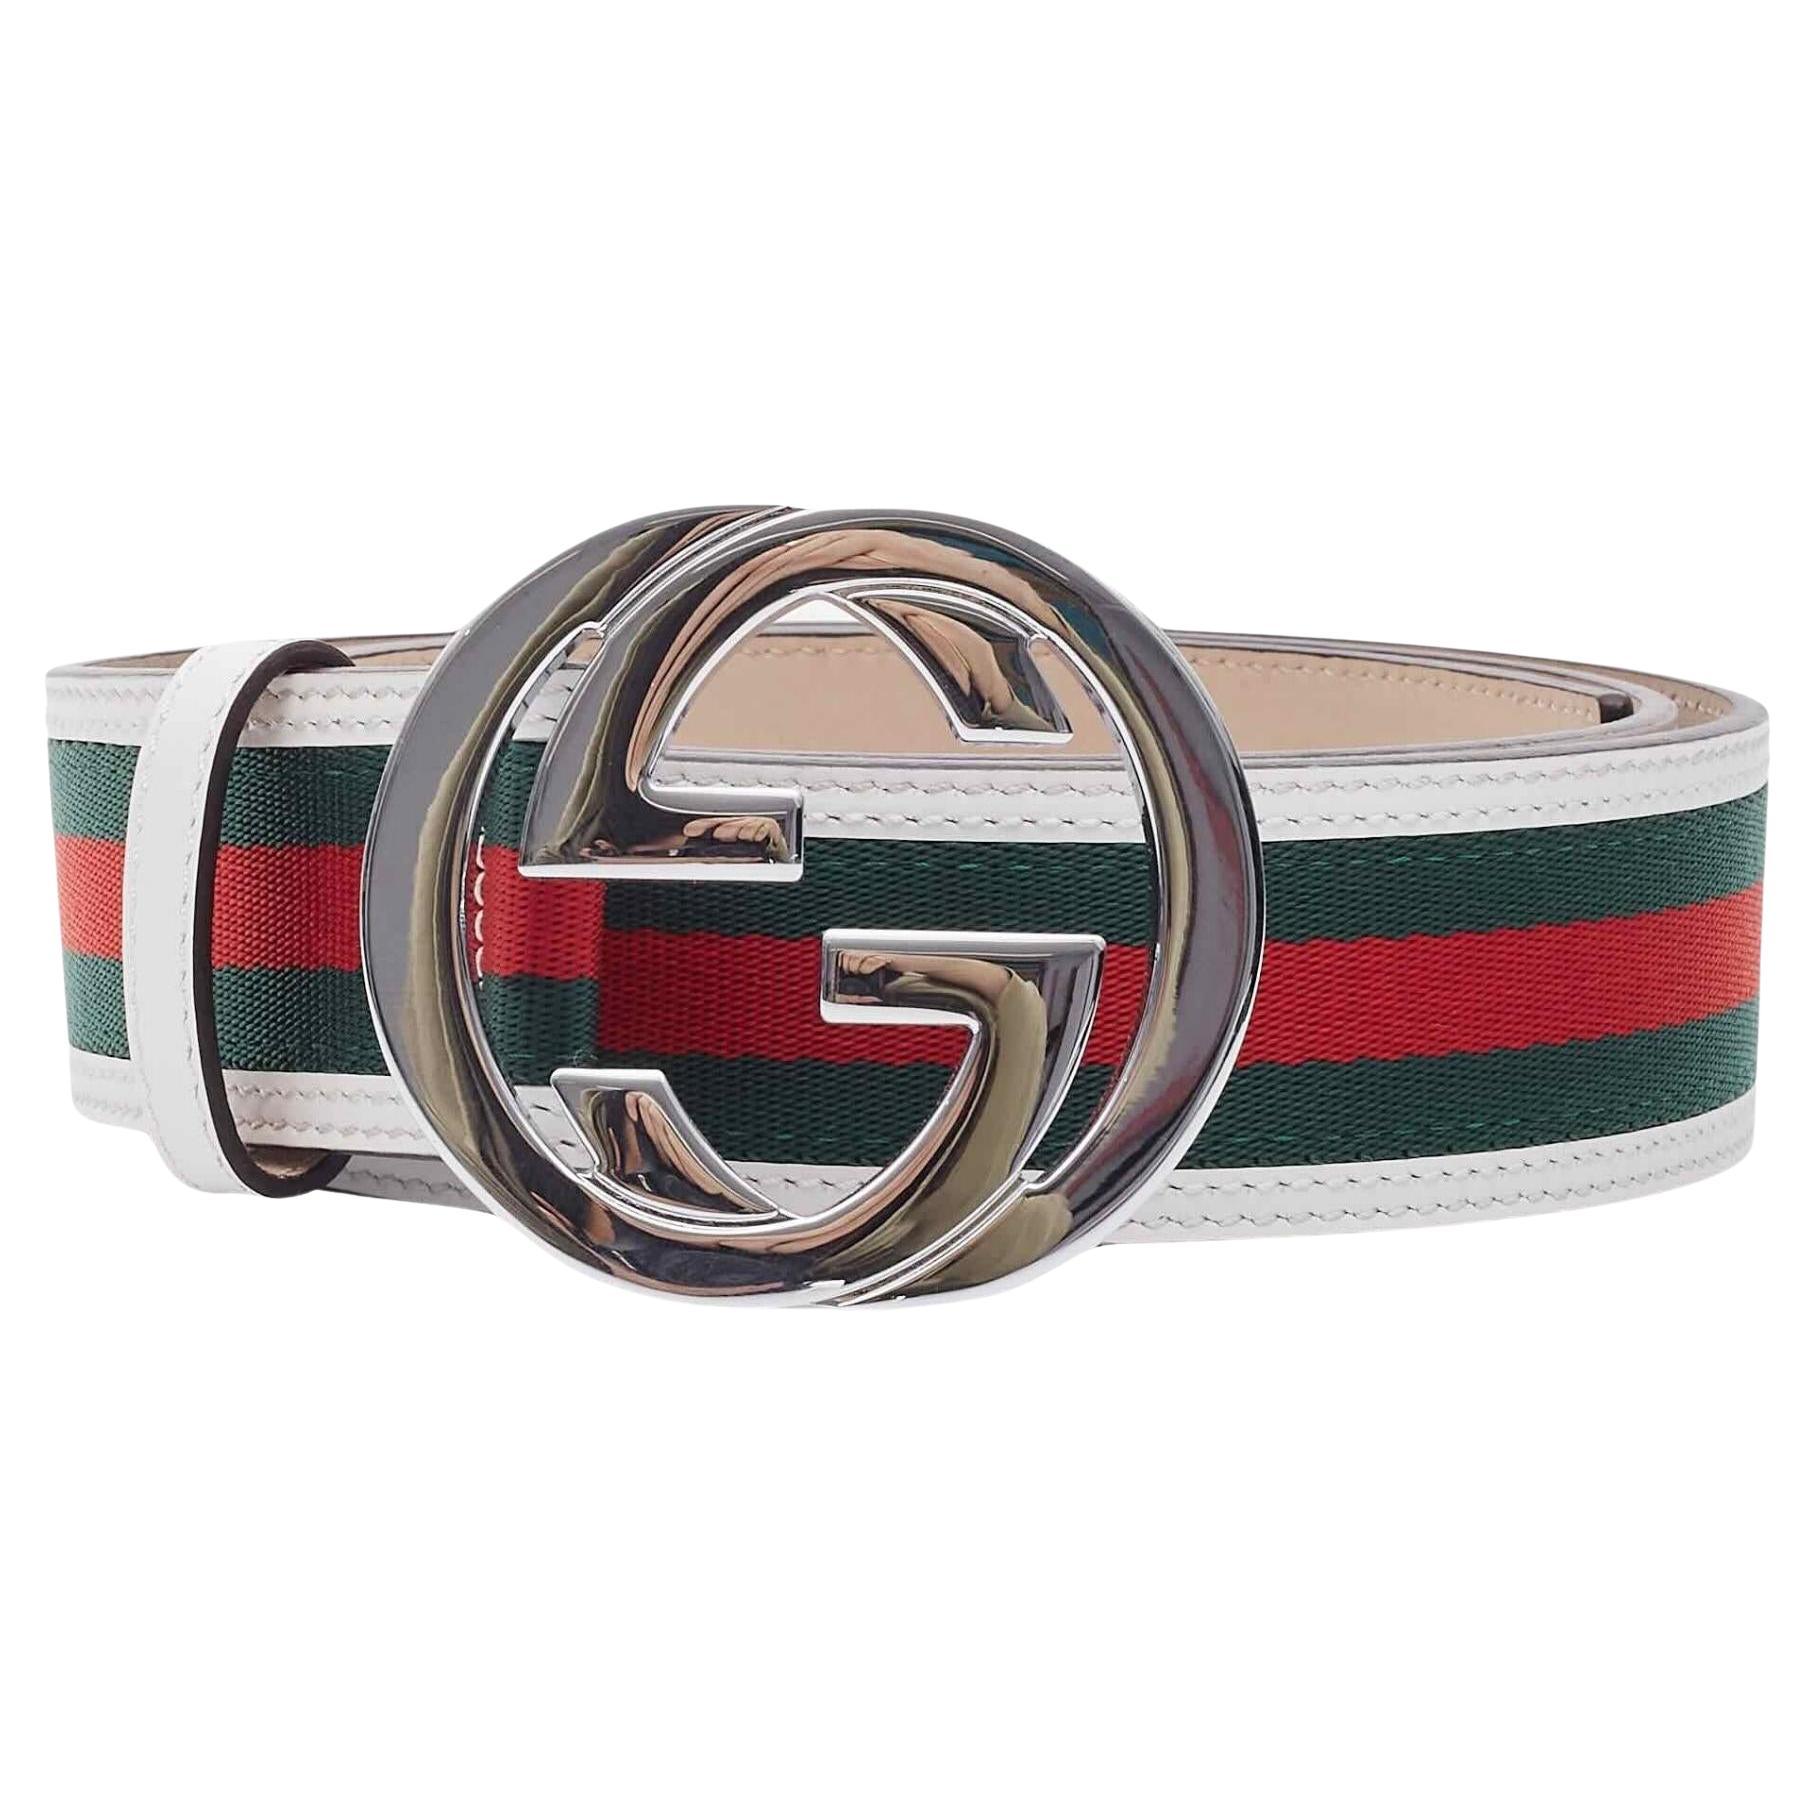 Gucci Web White Interlocking GG Belt (Size 100/40)